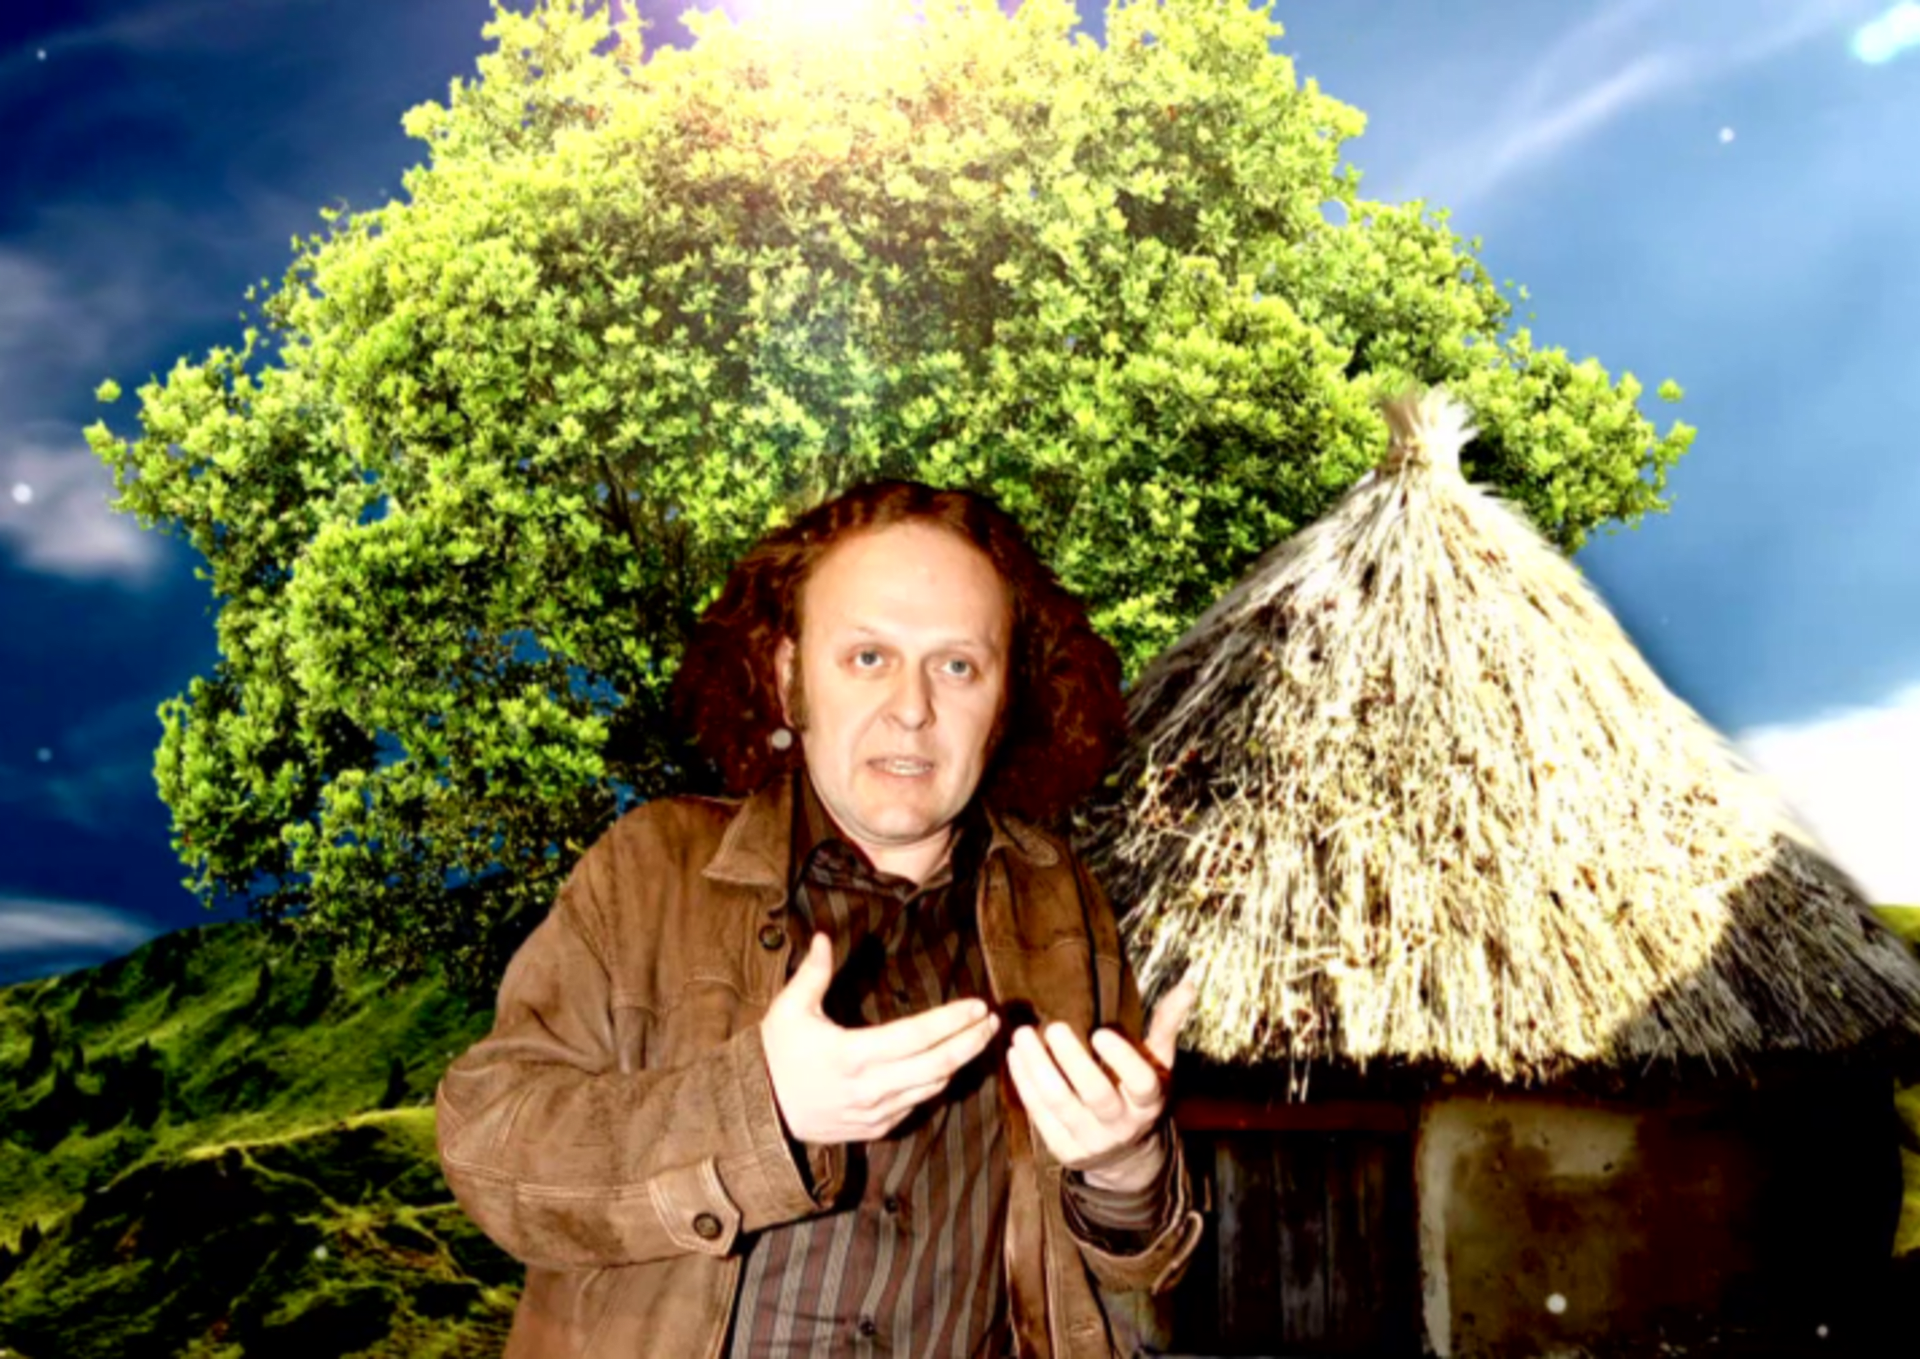 Video VIP zprávy: Jaroslav Dušek postavil super ekologický hliněný dům. Podívejte se, jak vypadá